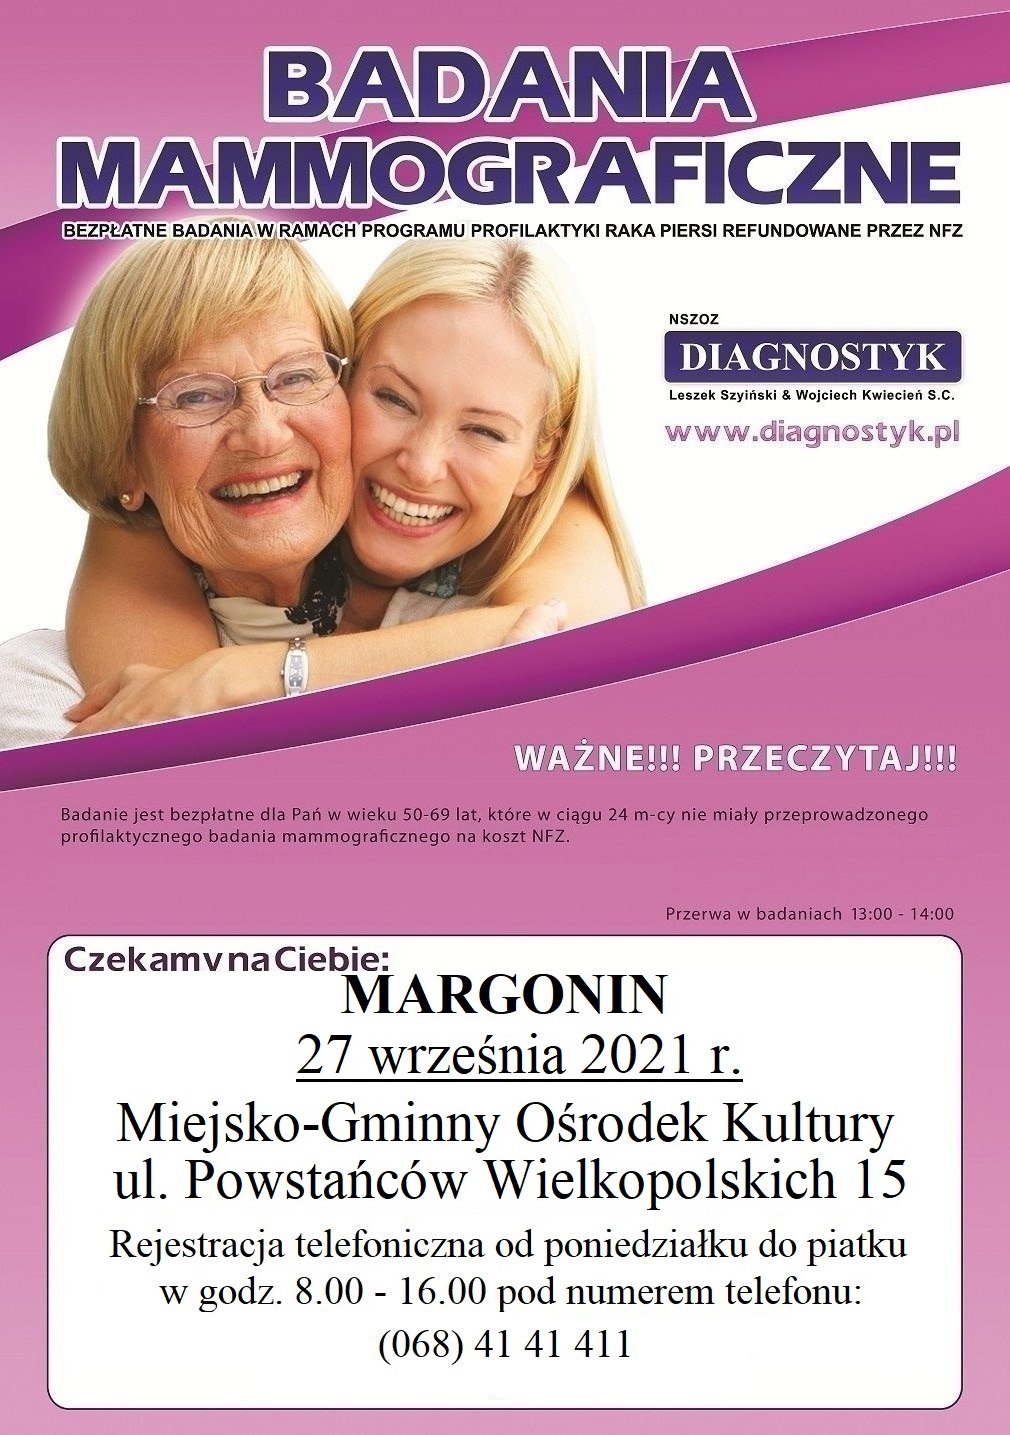 Badania mammograficzne - plakat organizatora. Szczegóły w treści artykułu.